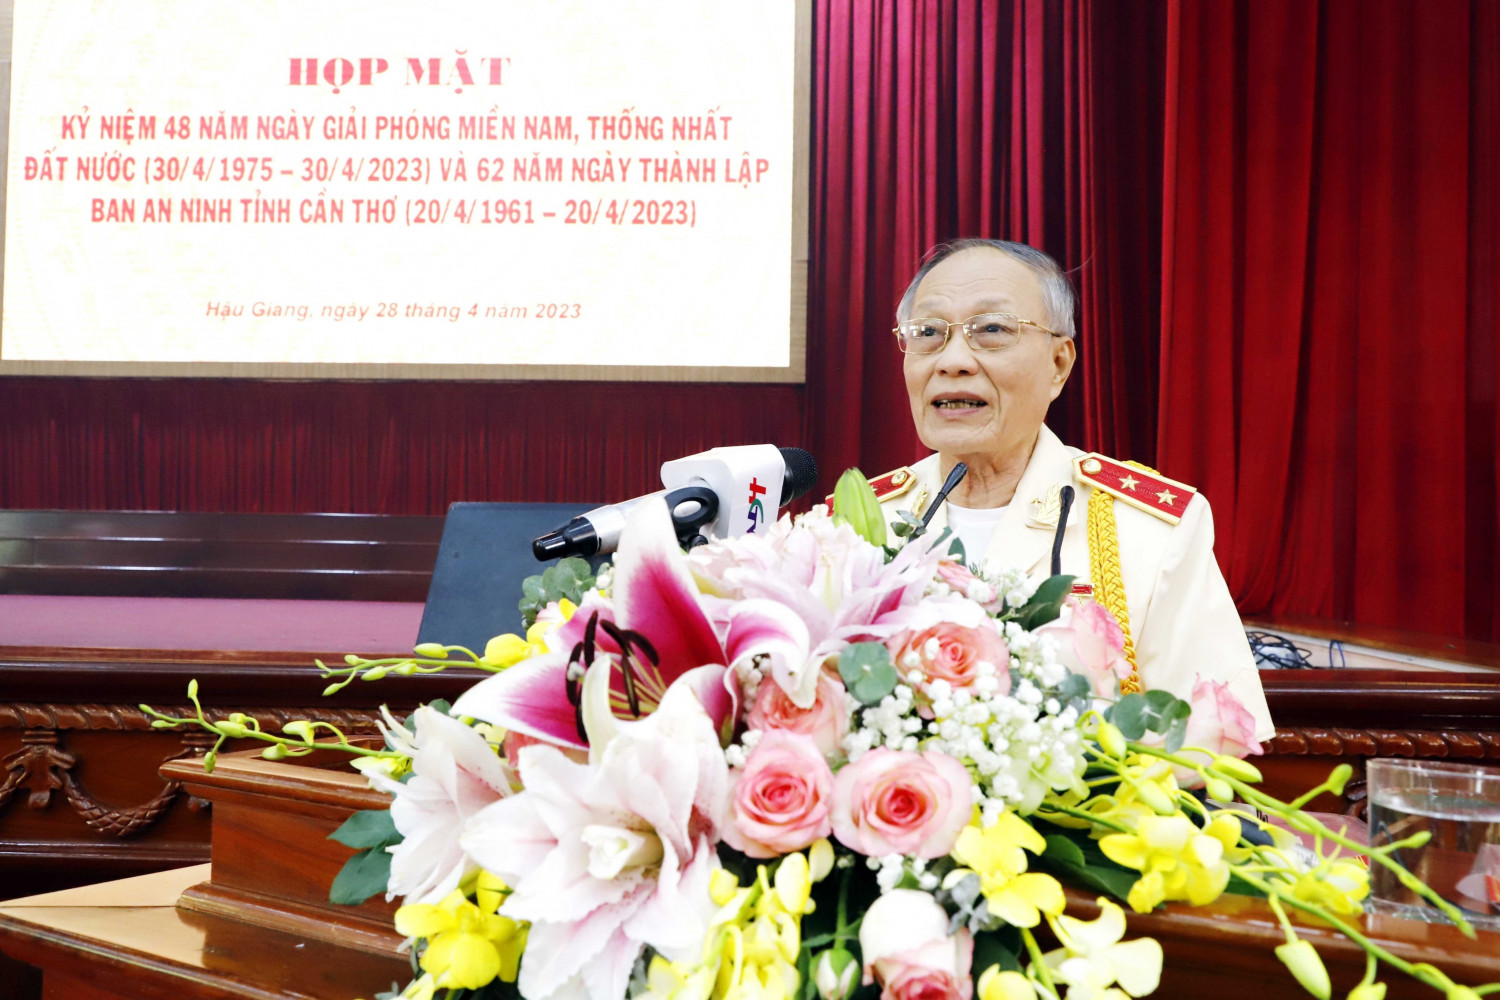 Trung tướng Nguyễn Xuân Xinh, Anh hùng Lực lượng vũ trang nhân dân, nguyên Phó tổng cục trưởng Tổng cục V, Bộ Công an - Phó Trưởng Ban Liên lạc Ban An ninh tỉnh Cần Thơ phát biểu ôn lại truyền thống của Ban An ninh tỉnh Cần Thơ